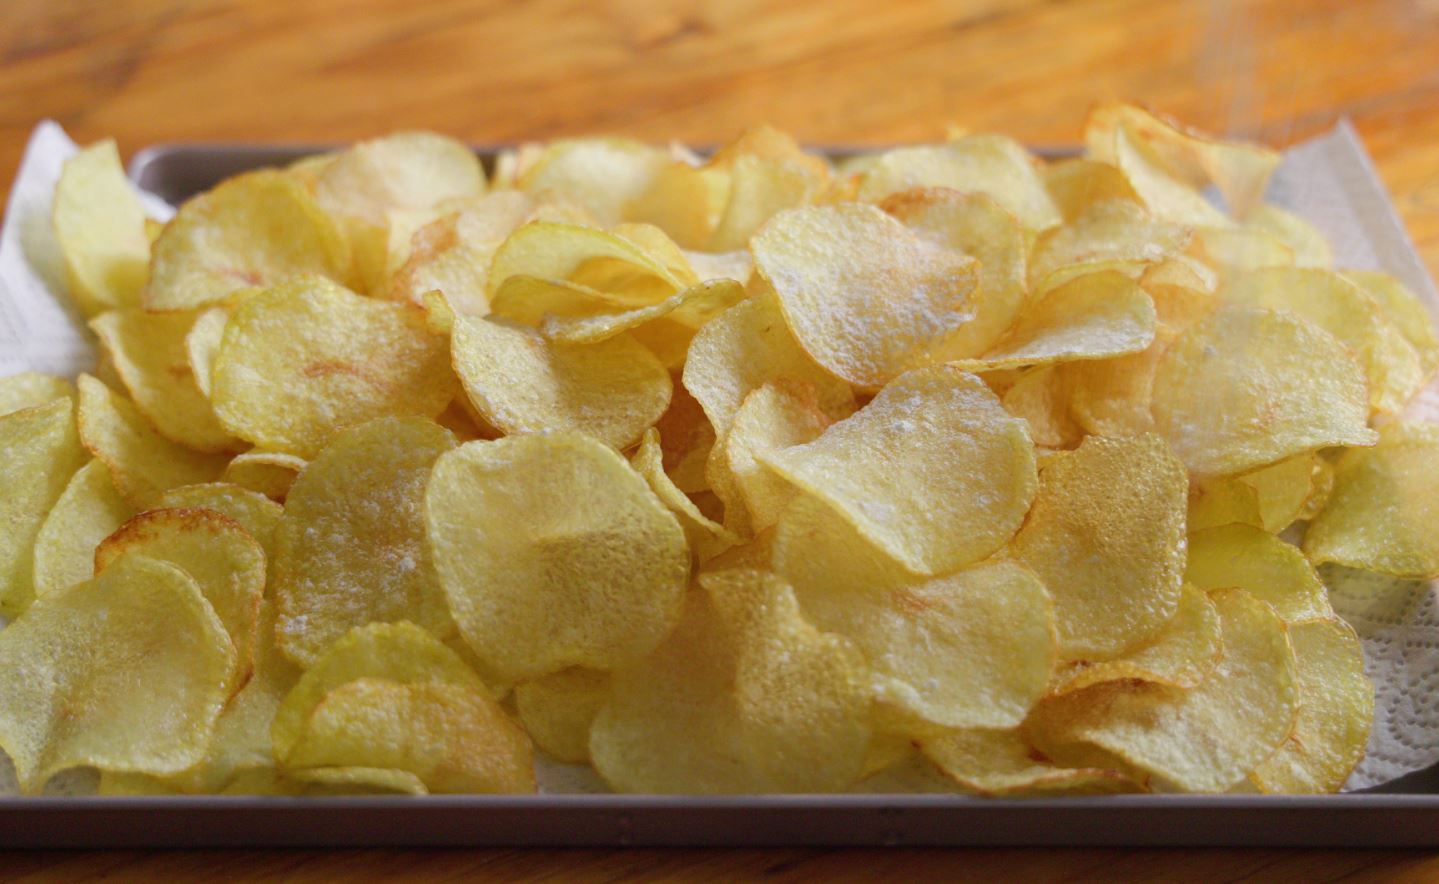 Crispy Baked Potato Chips